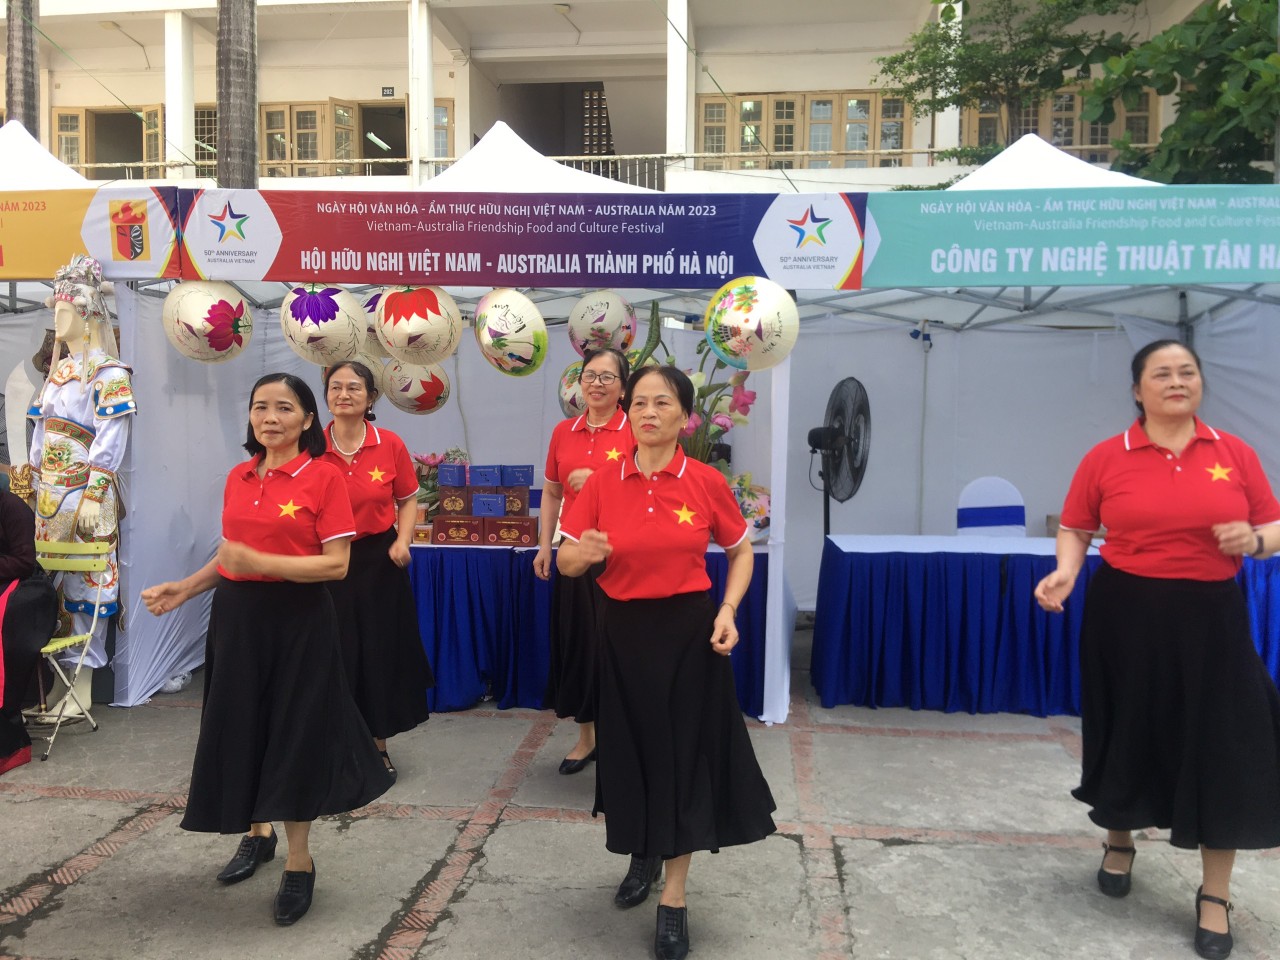 Ngày hội Văn hóa Ẩm thực Hữu nghị Việt Nam - Australia